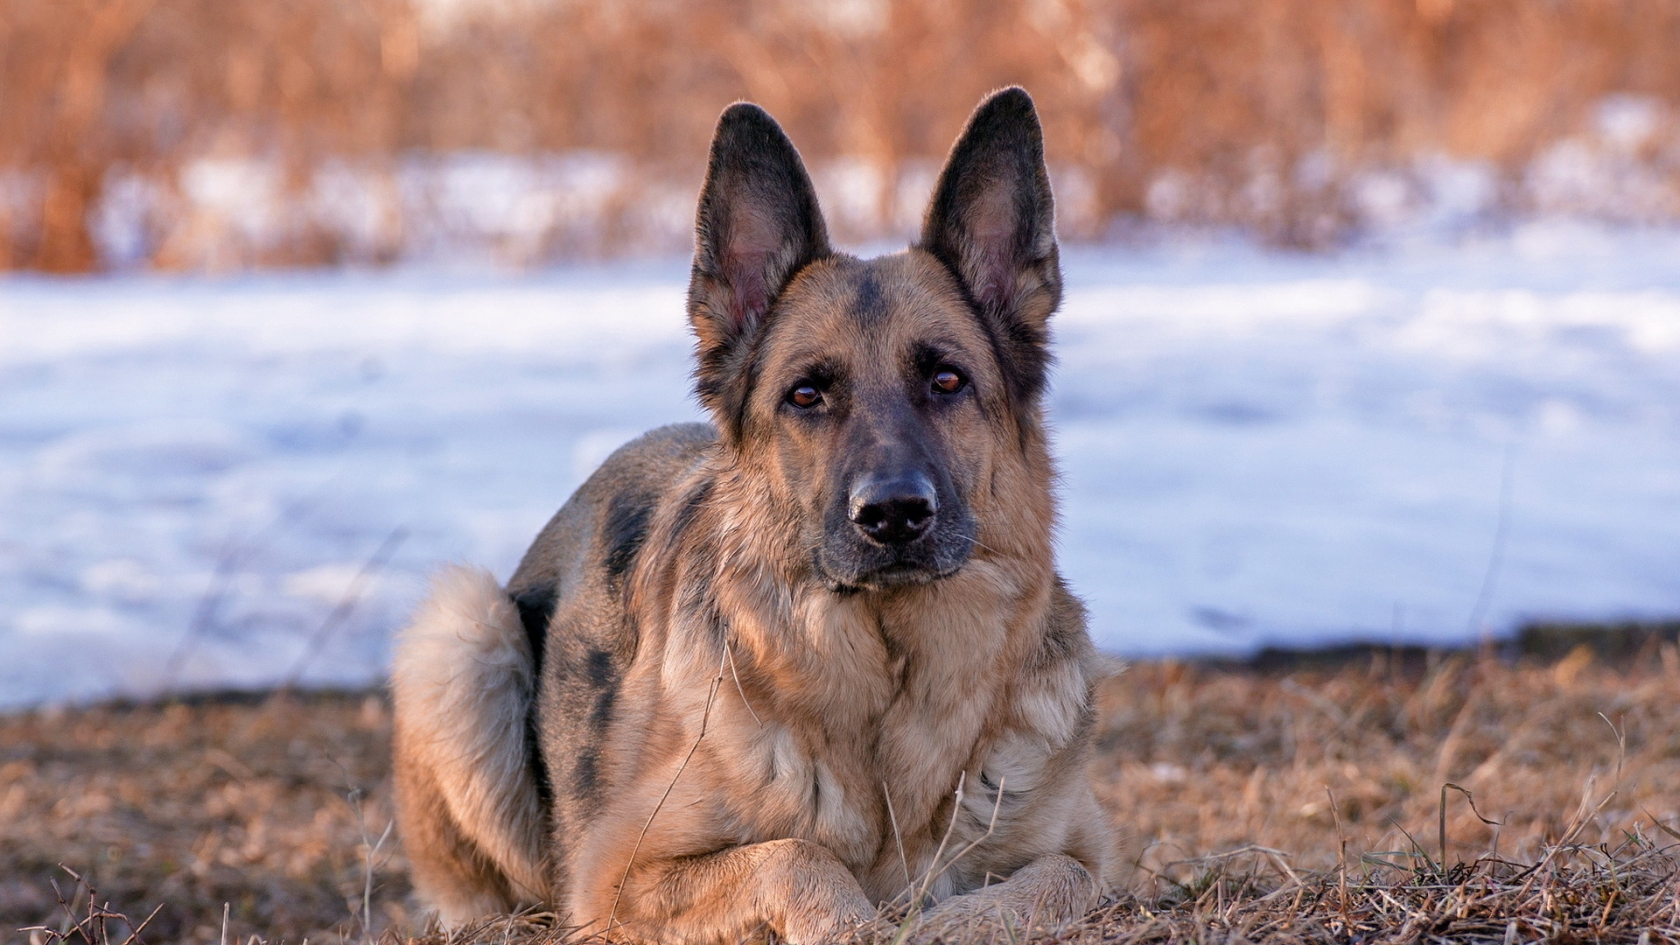 German Shepherd Dog for 1680 x 945 HDTV resolution